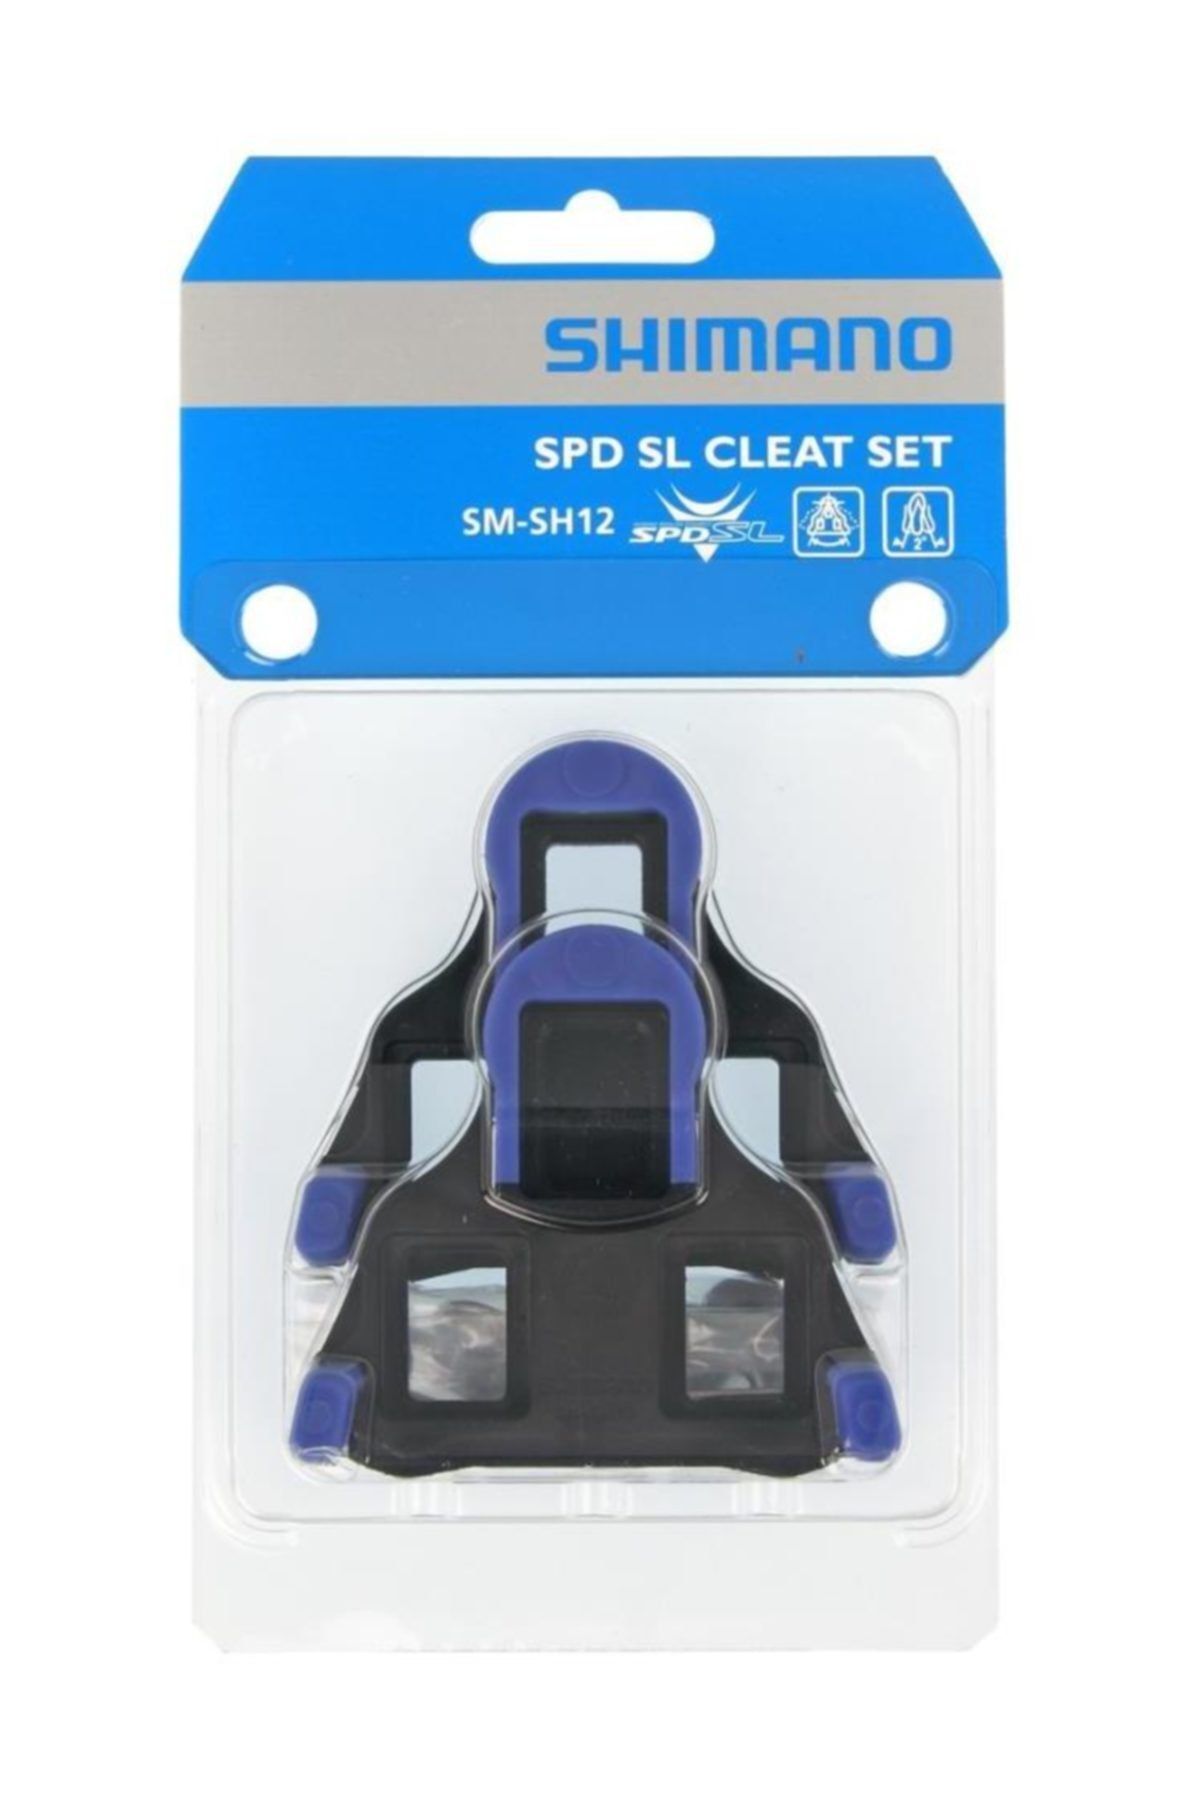 shimano Yol Pedal Kali Sm-sh12 Mavi 2° Sm-sh10/11/12